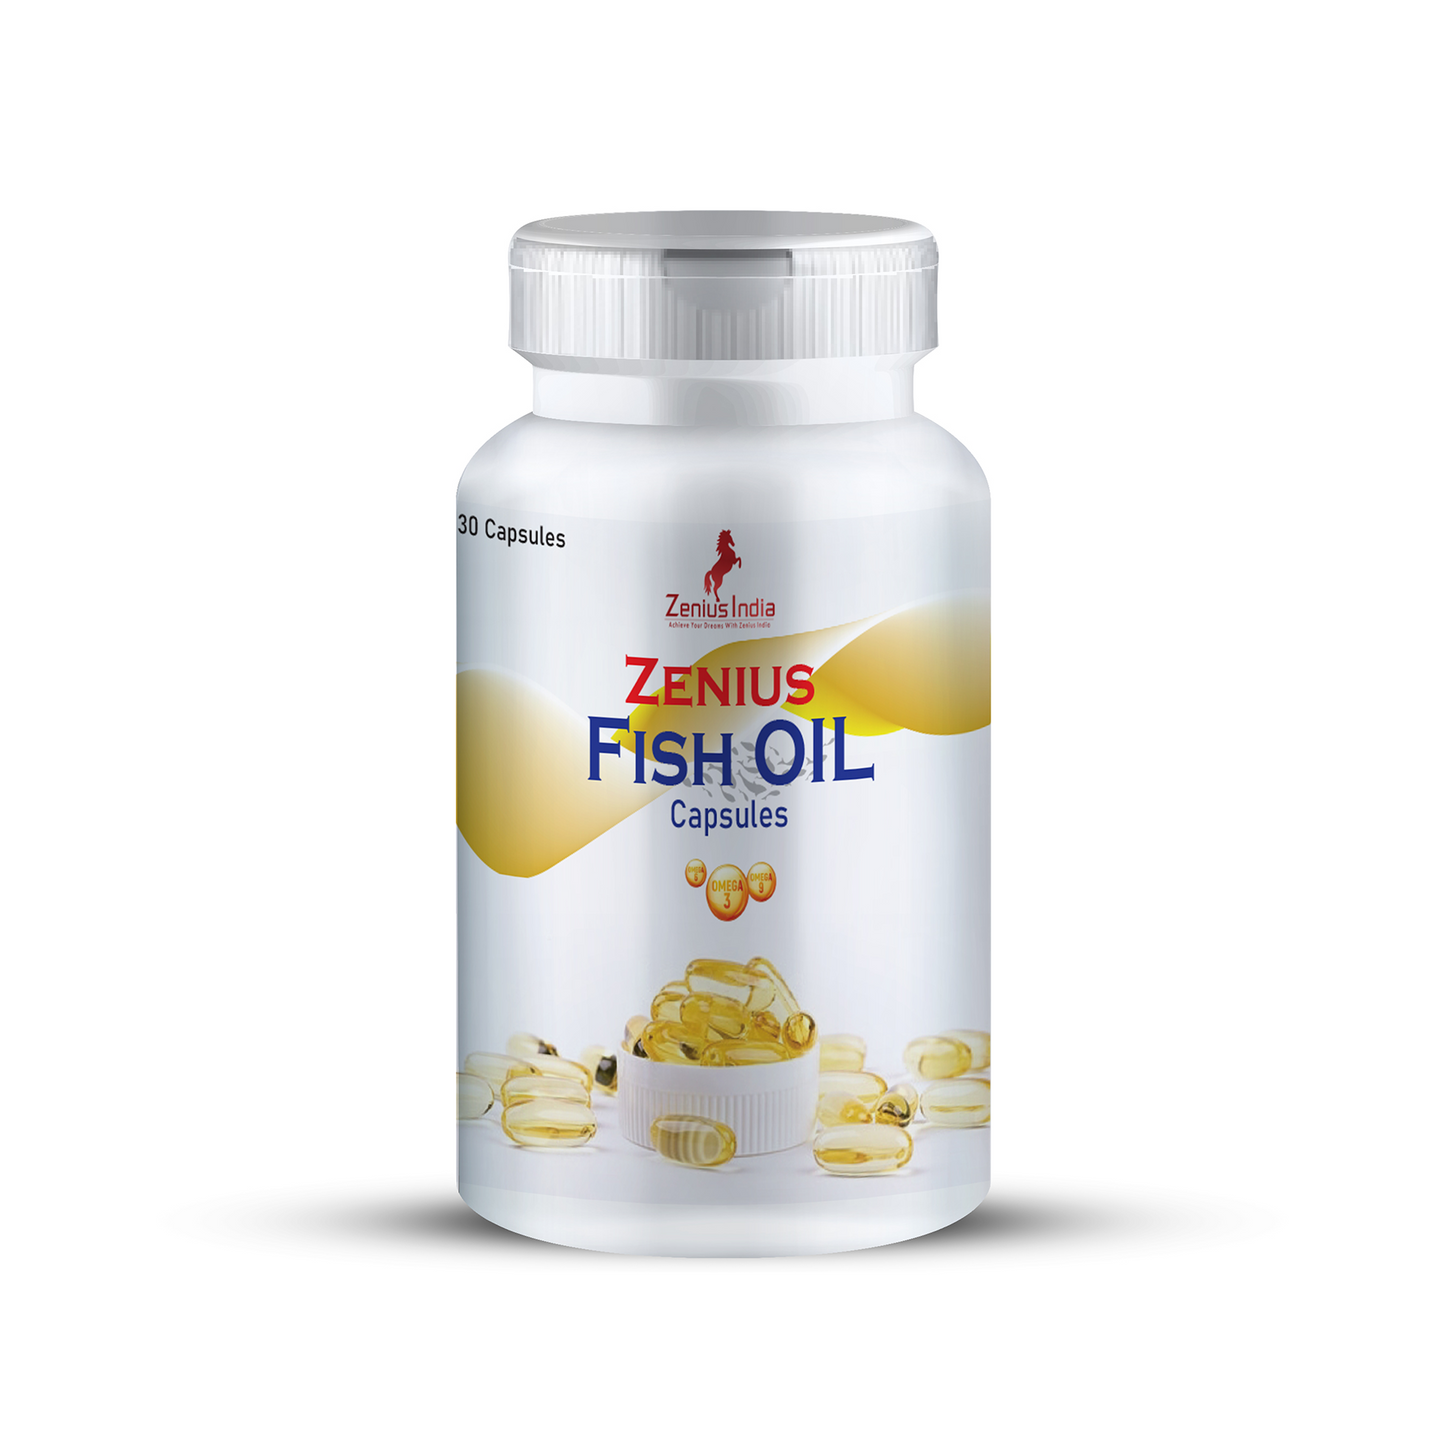 Zenius Fish Oil Capsules For Hair Growth, 30 Capsules